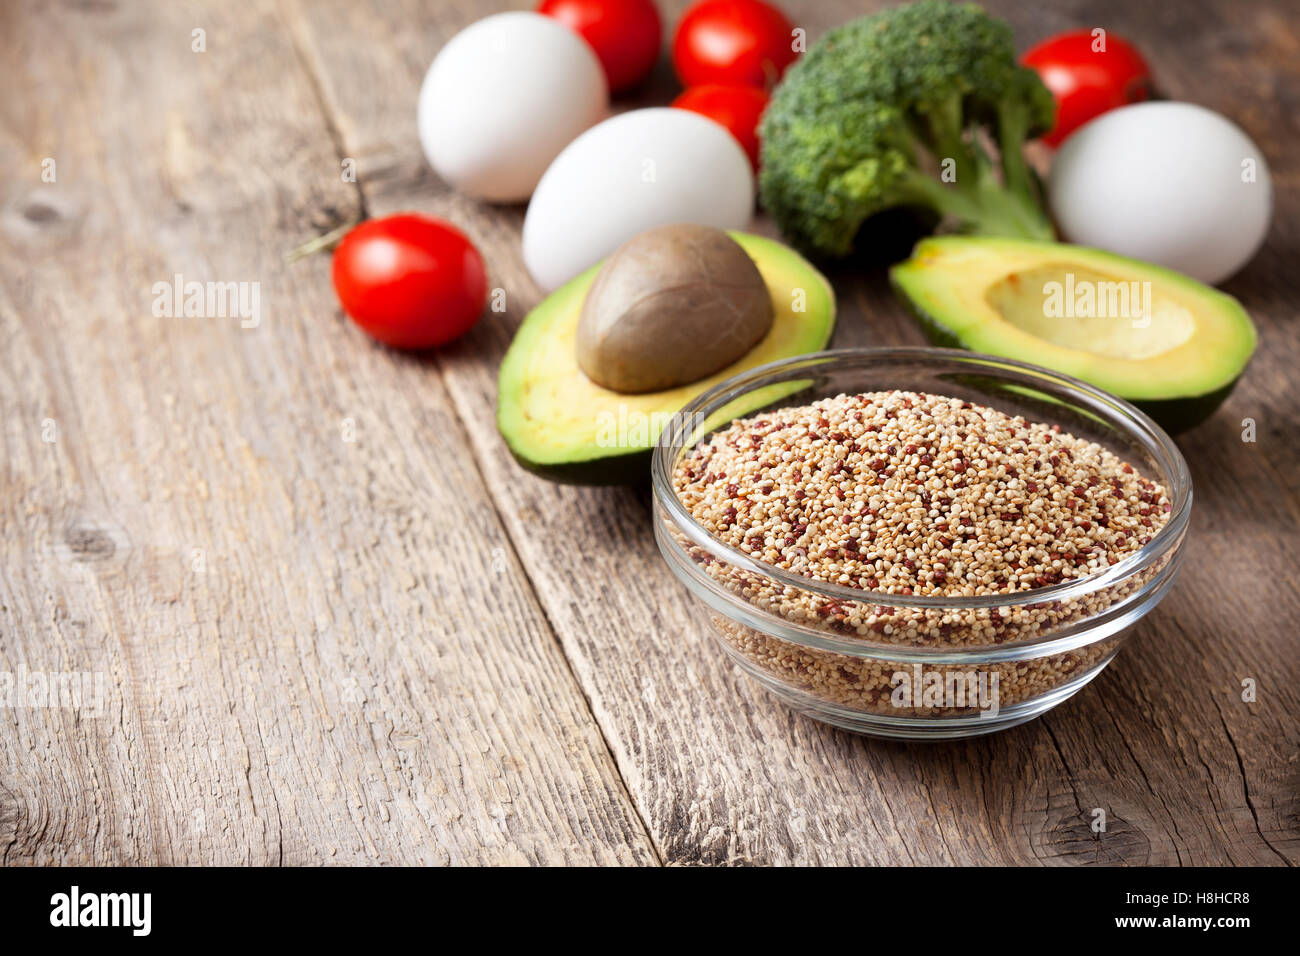 Ingredienti per fare una sana prima colazione. La quinoa con verdure fresche: avocado, pomodori, broccoli, uova sullo sfondo Foto Stock